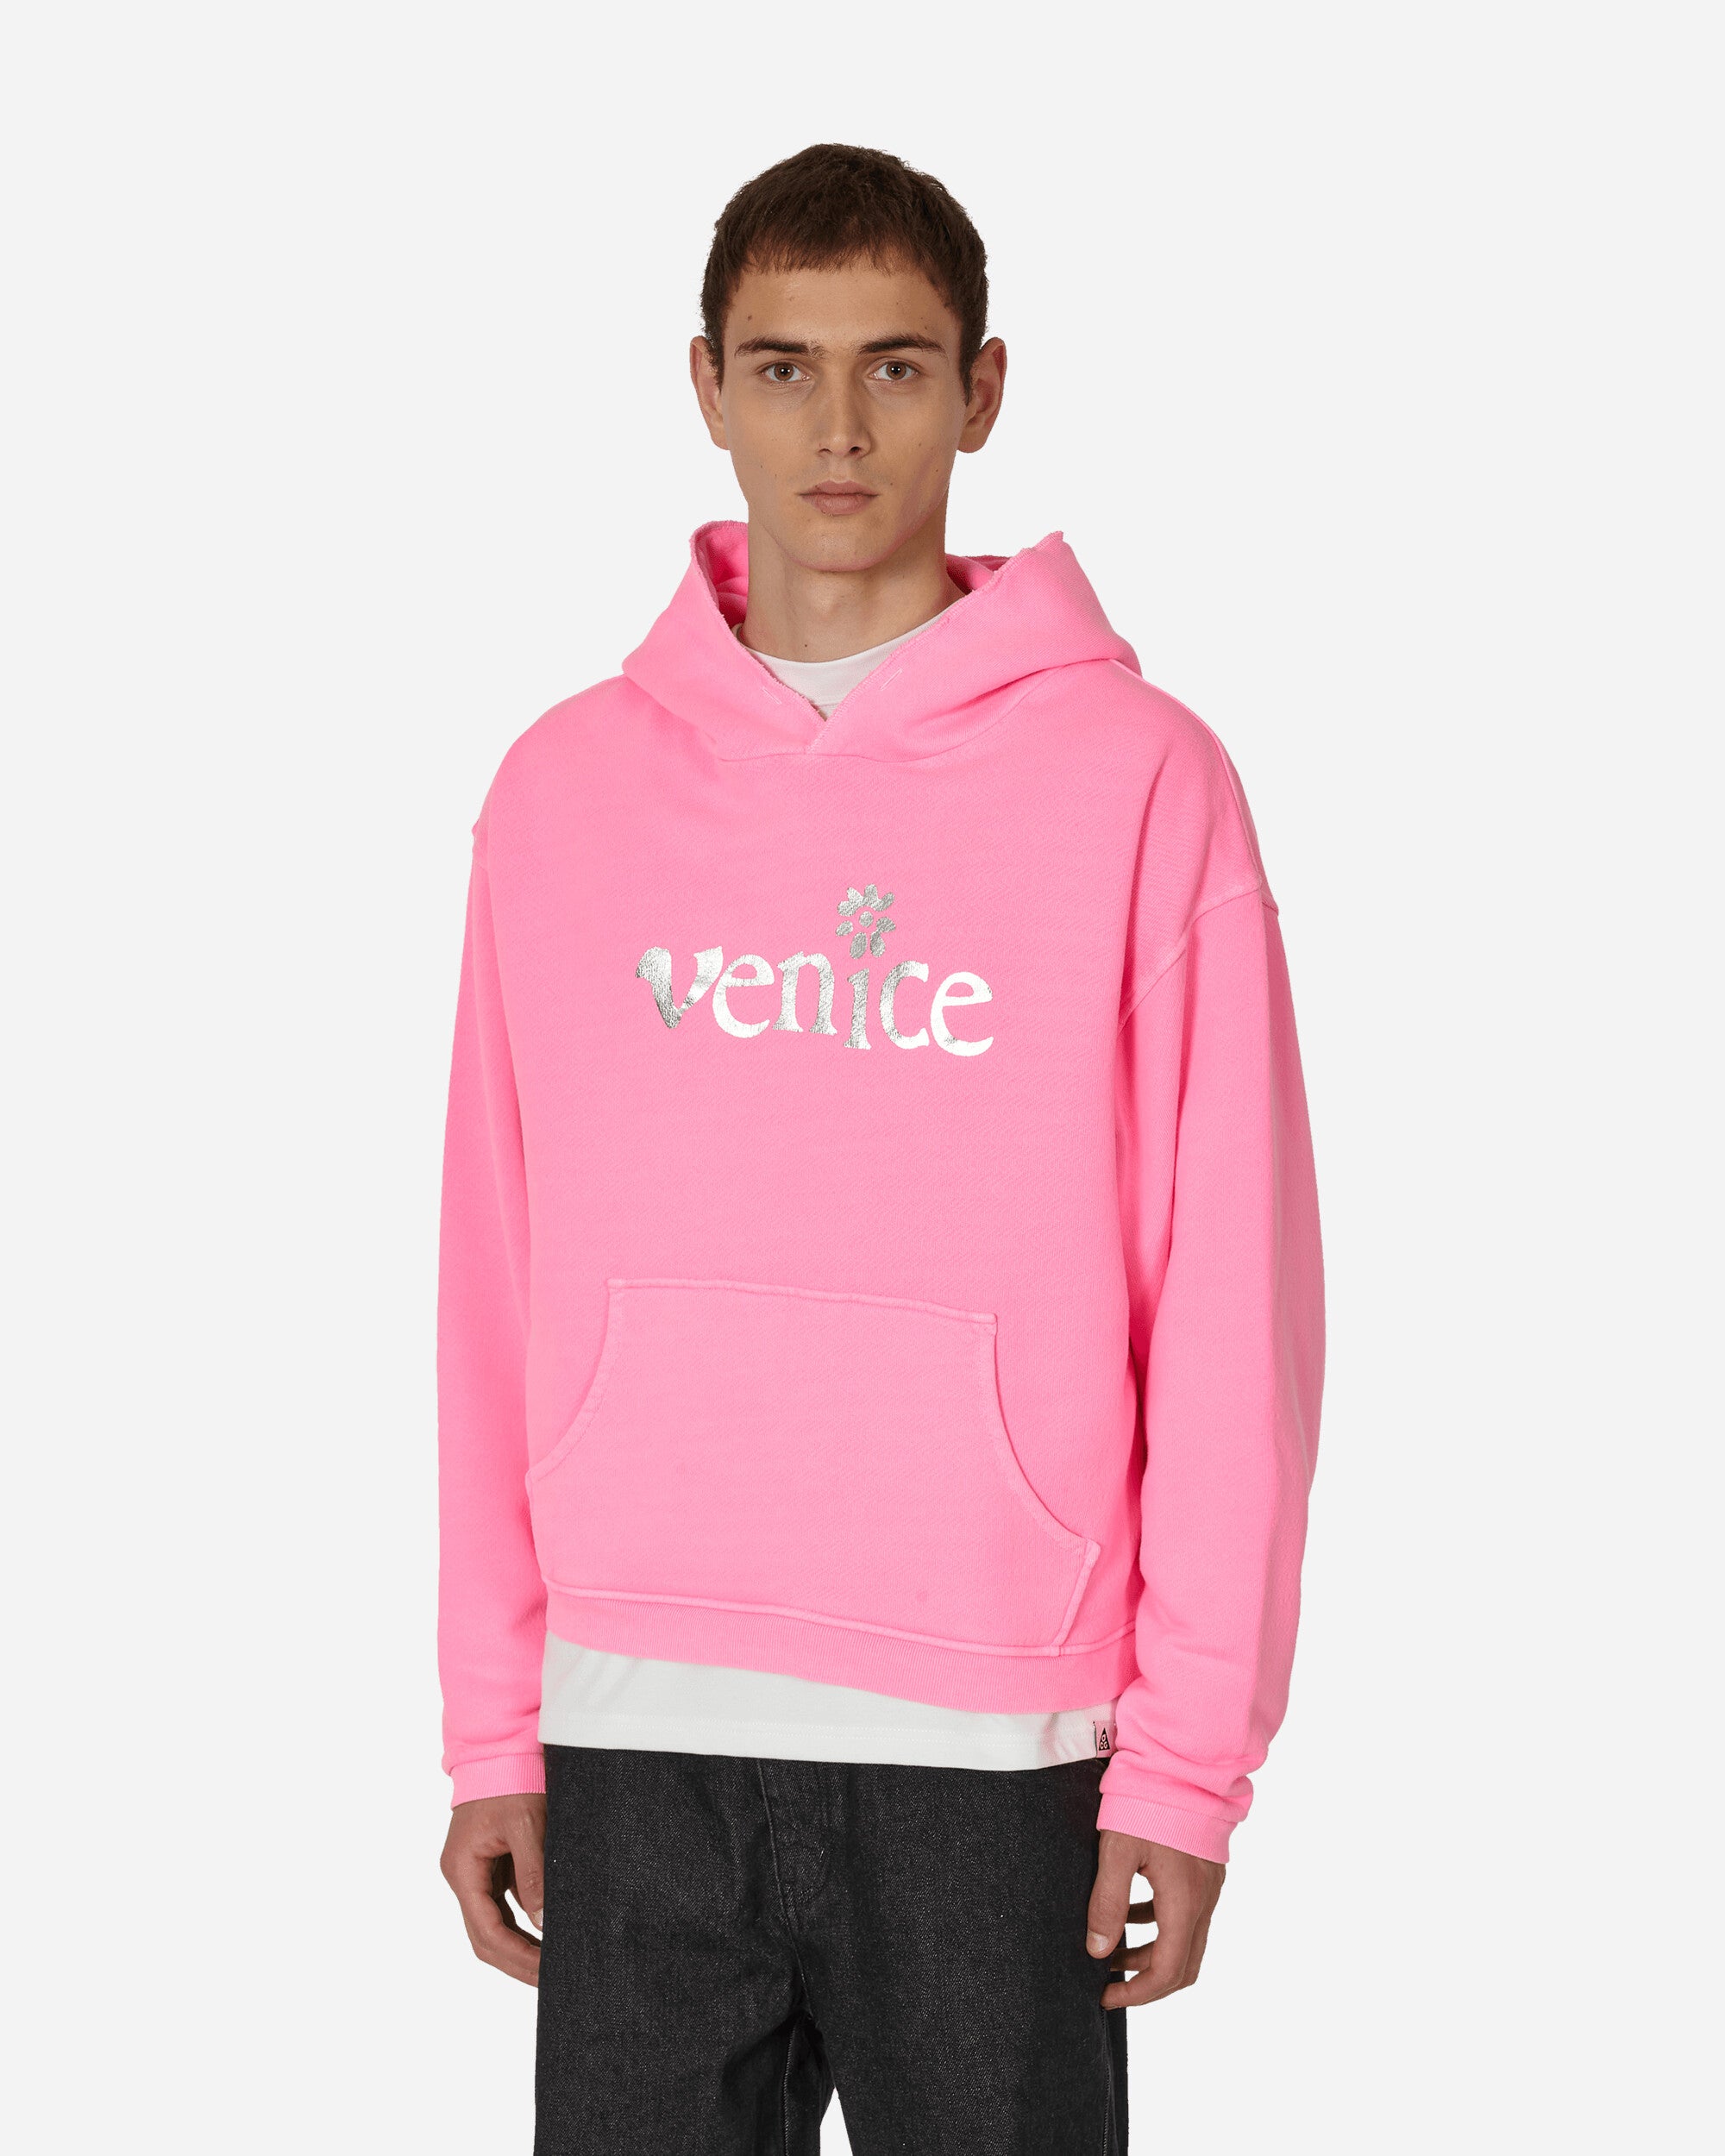 Silver Printed Venice Hooded Sweatshirt Pink – Slam Jam